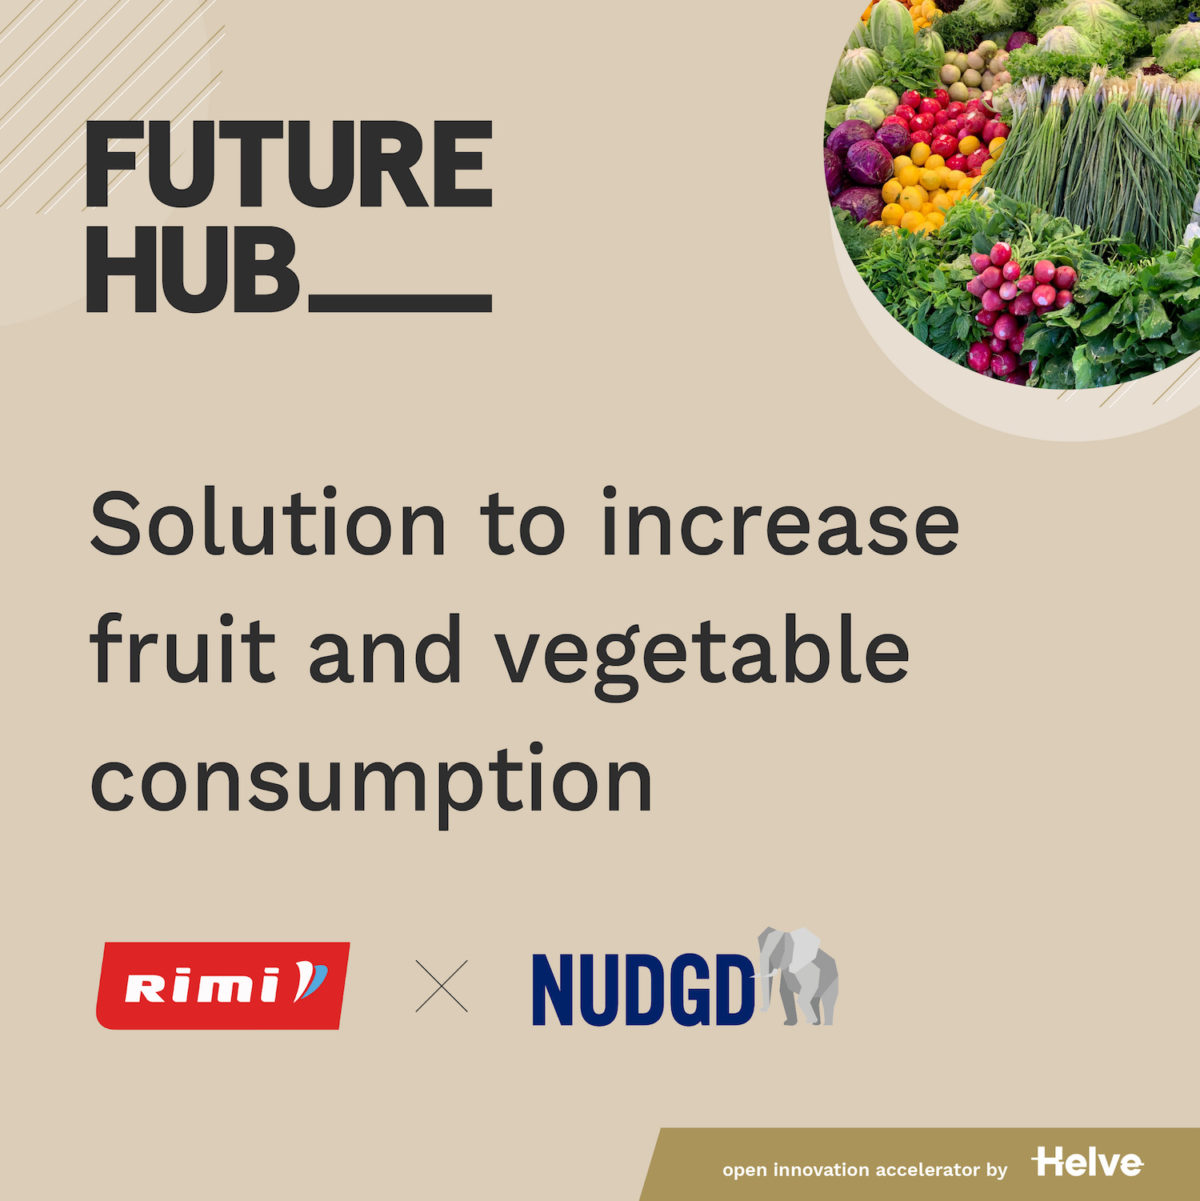 Featured image for “Nudging för att få fler att handla mer frukt och grönt”